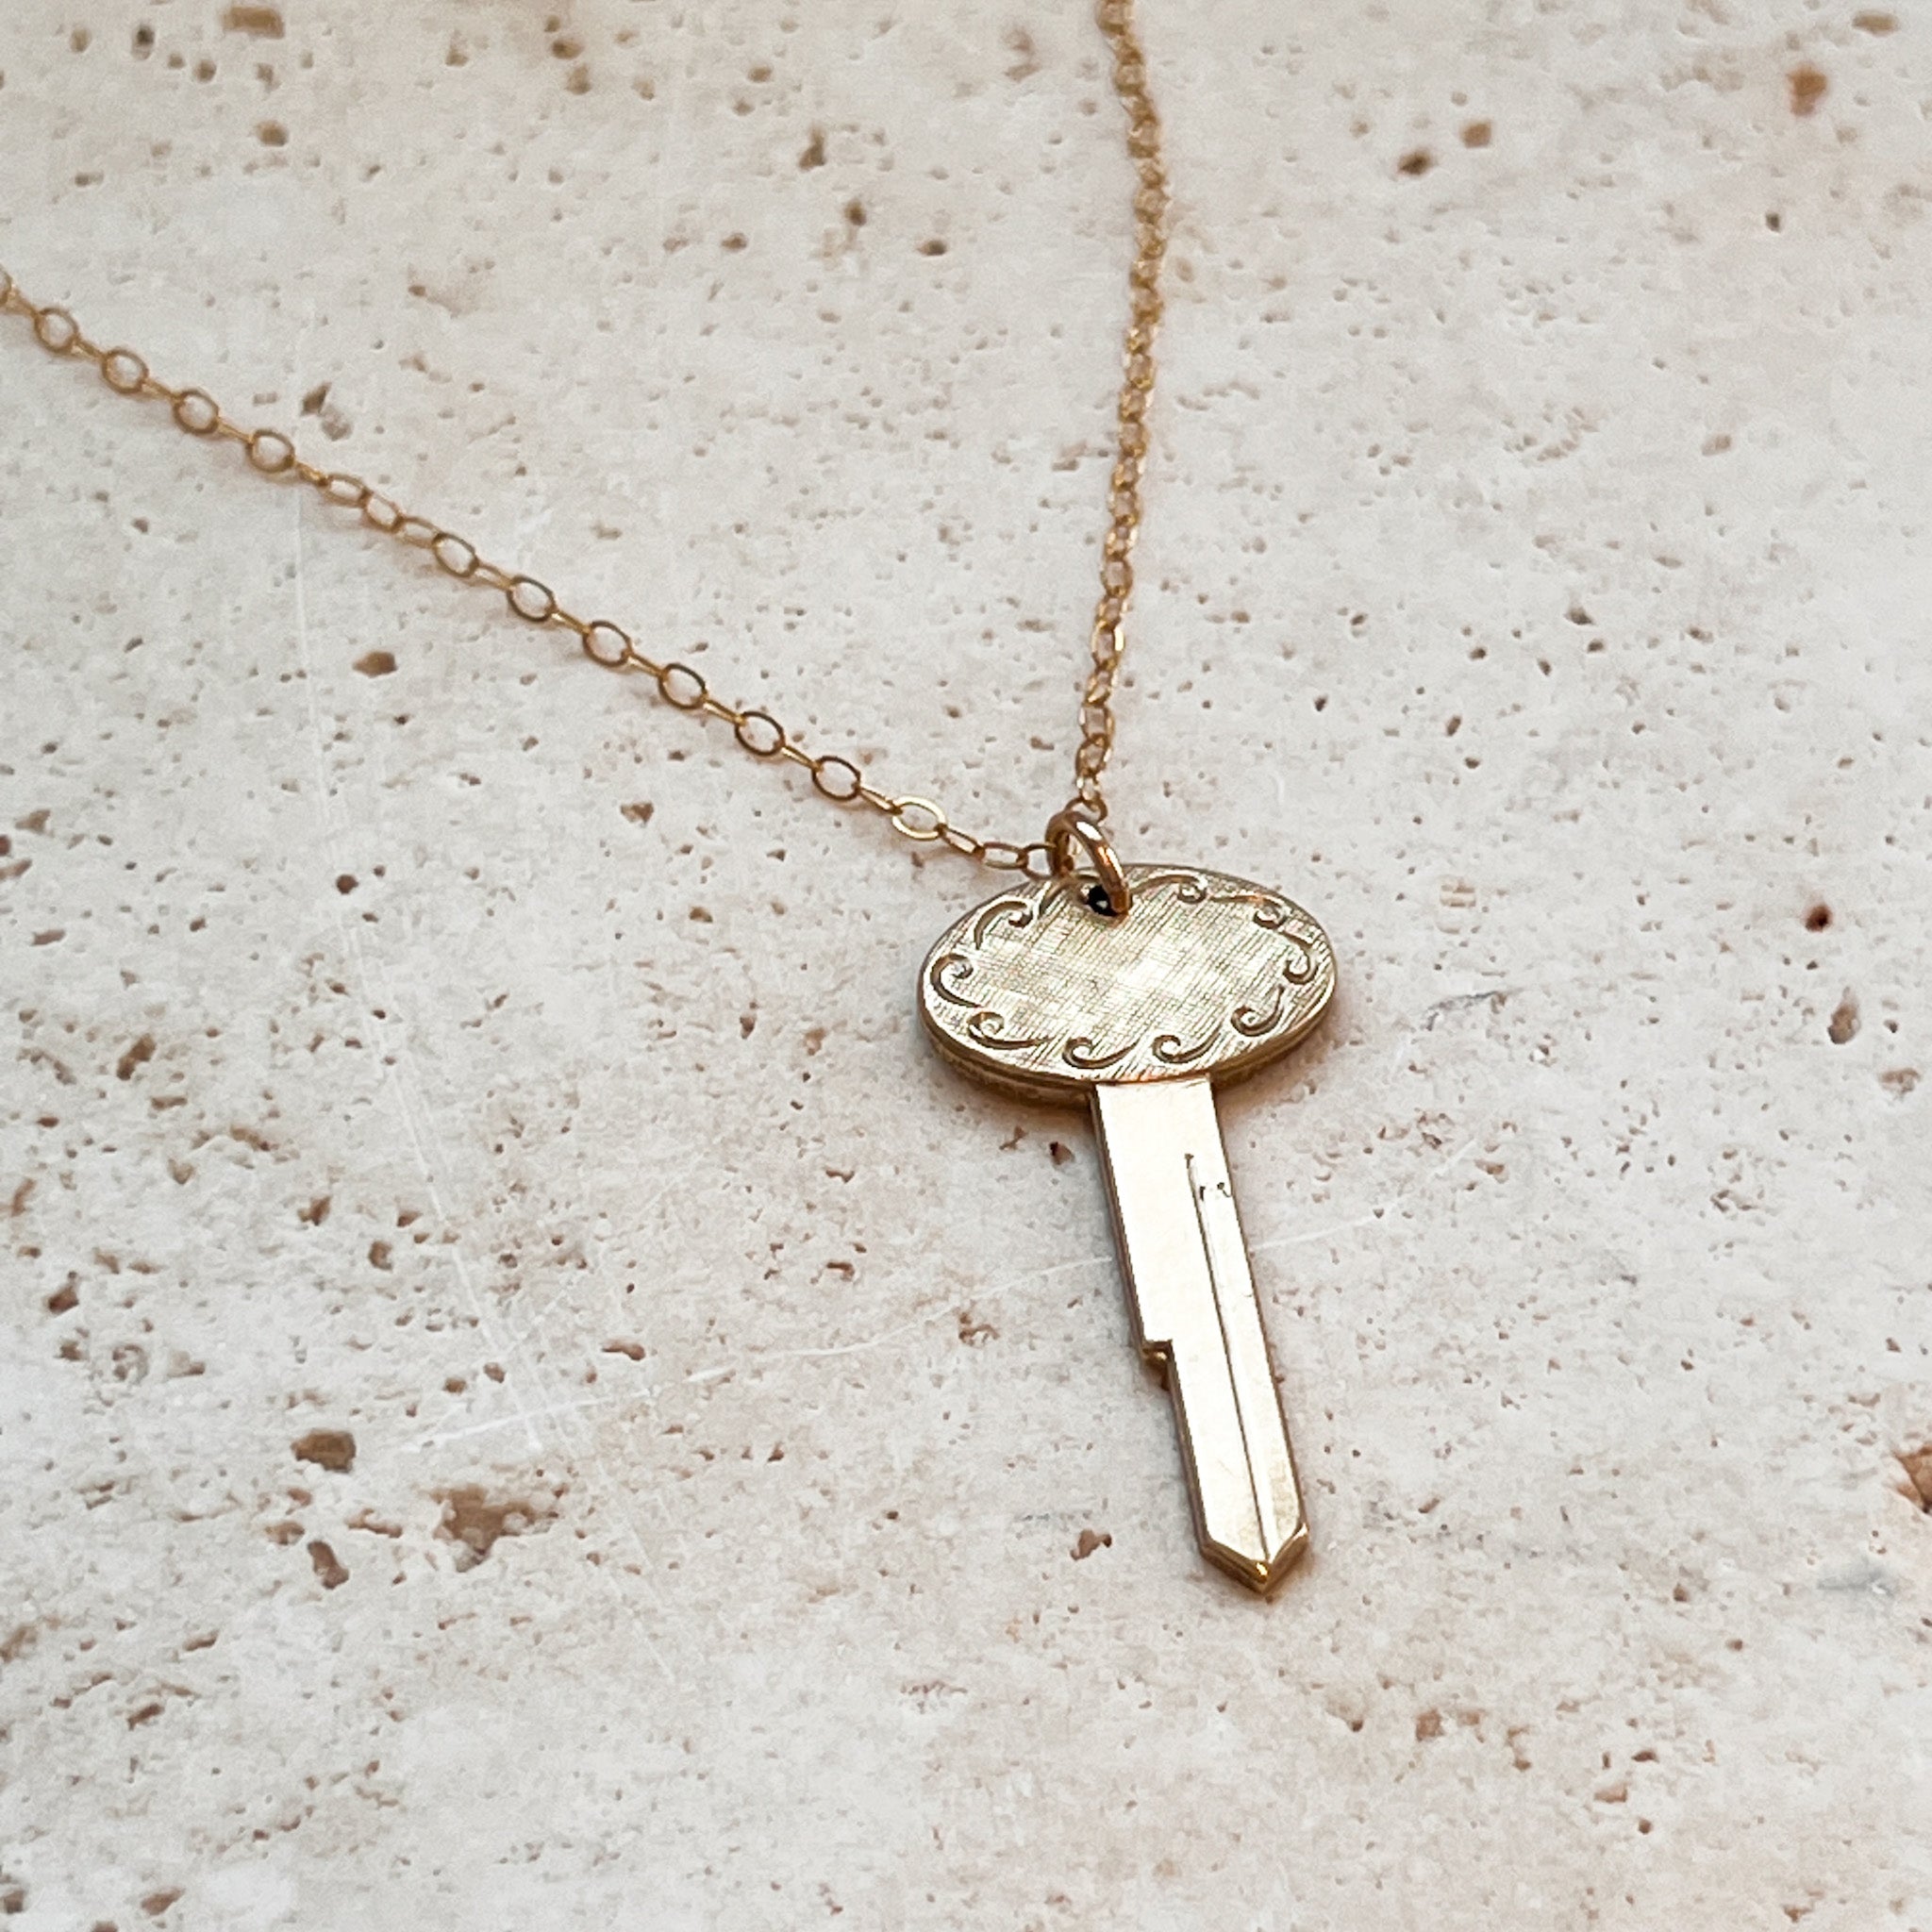 Vintage Oval Key Necklace